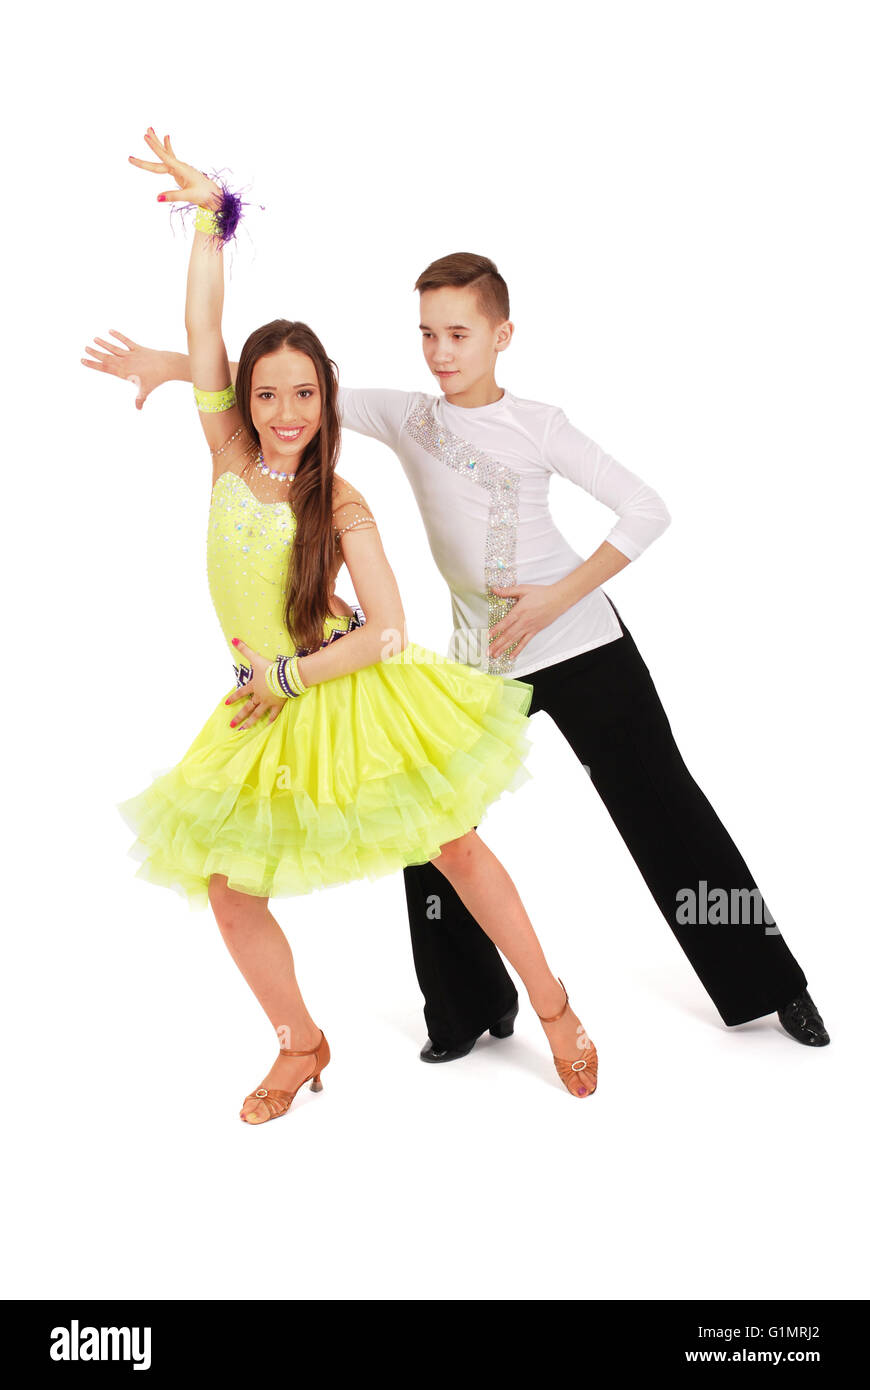 Garçon et fille danser La danse de salon sur fond blanc Banque D'Images